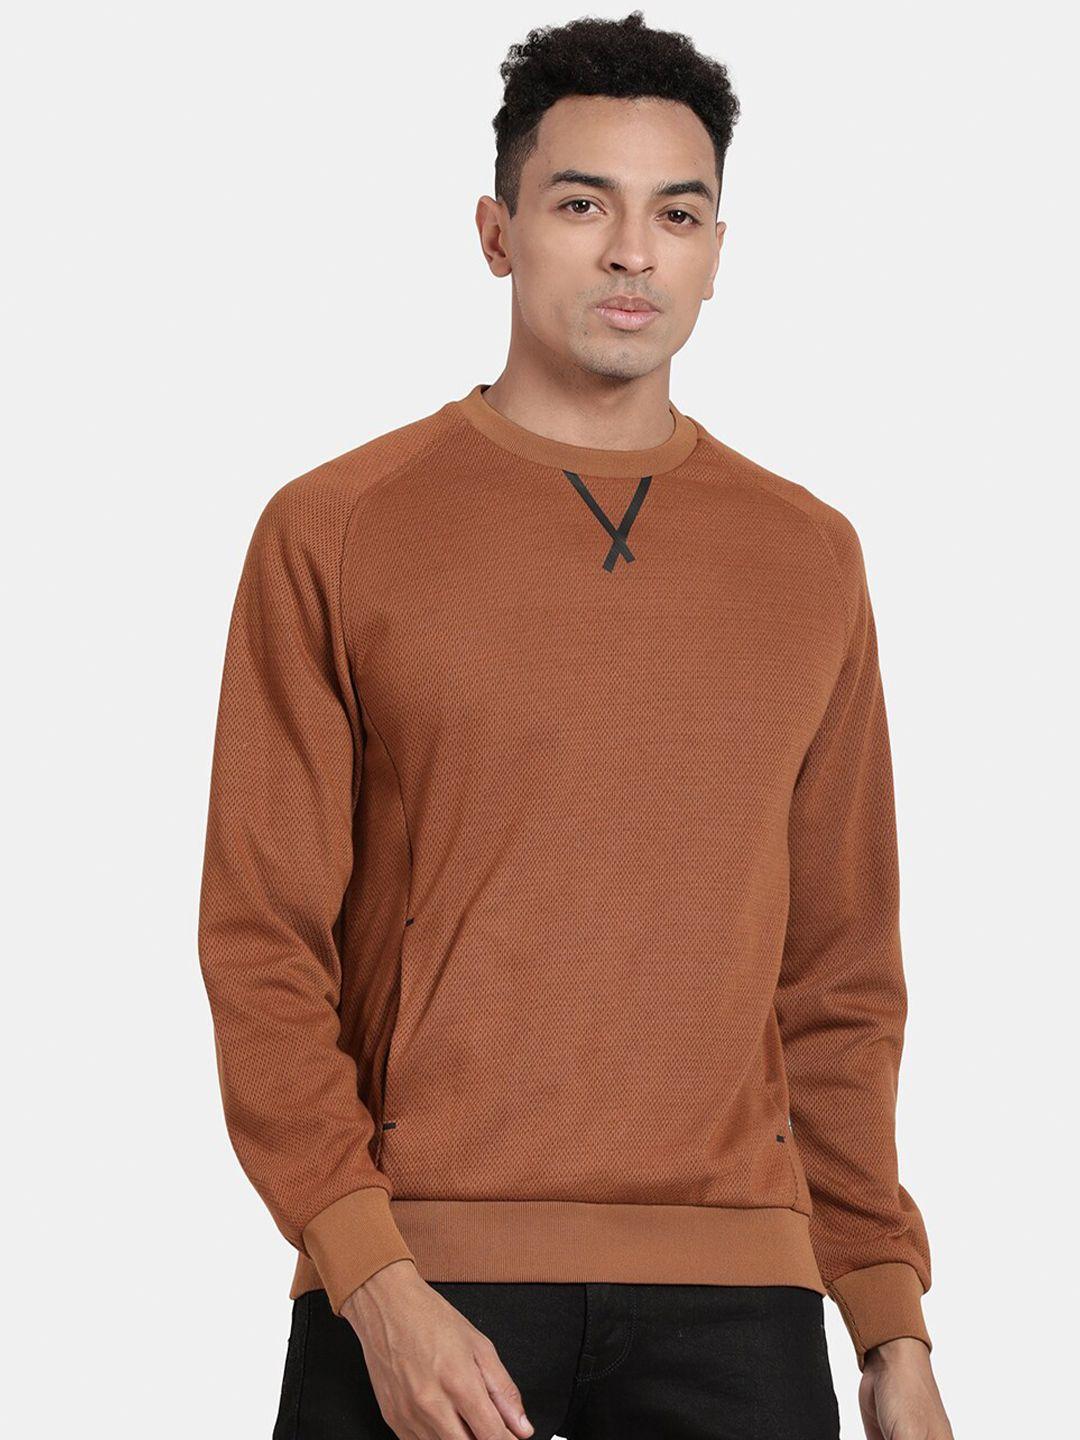 t-base round neck pullover sweatshirt